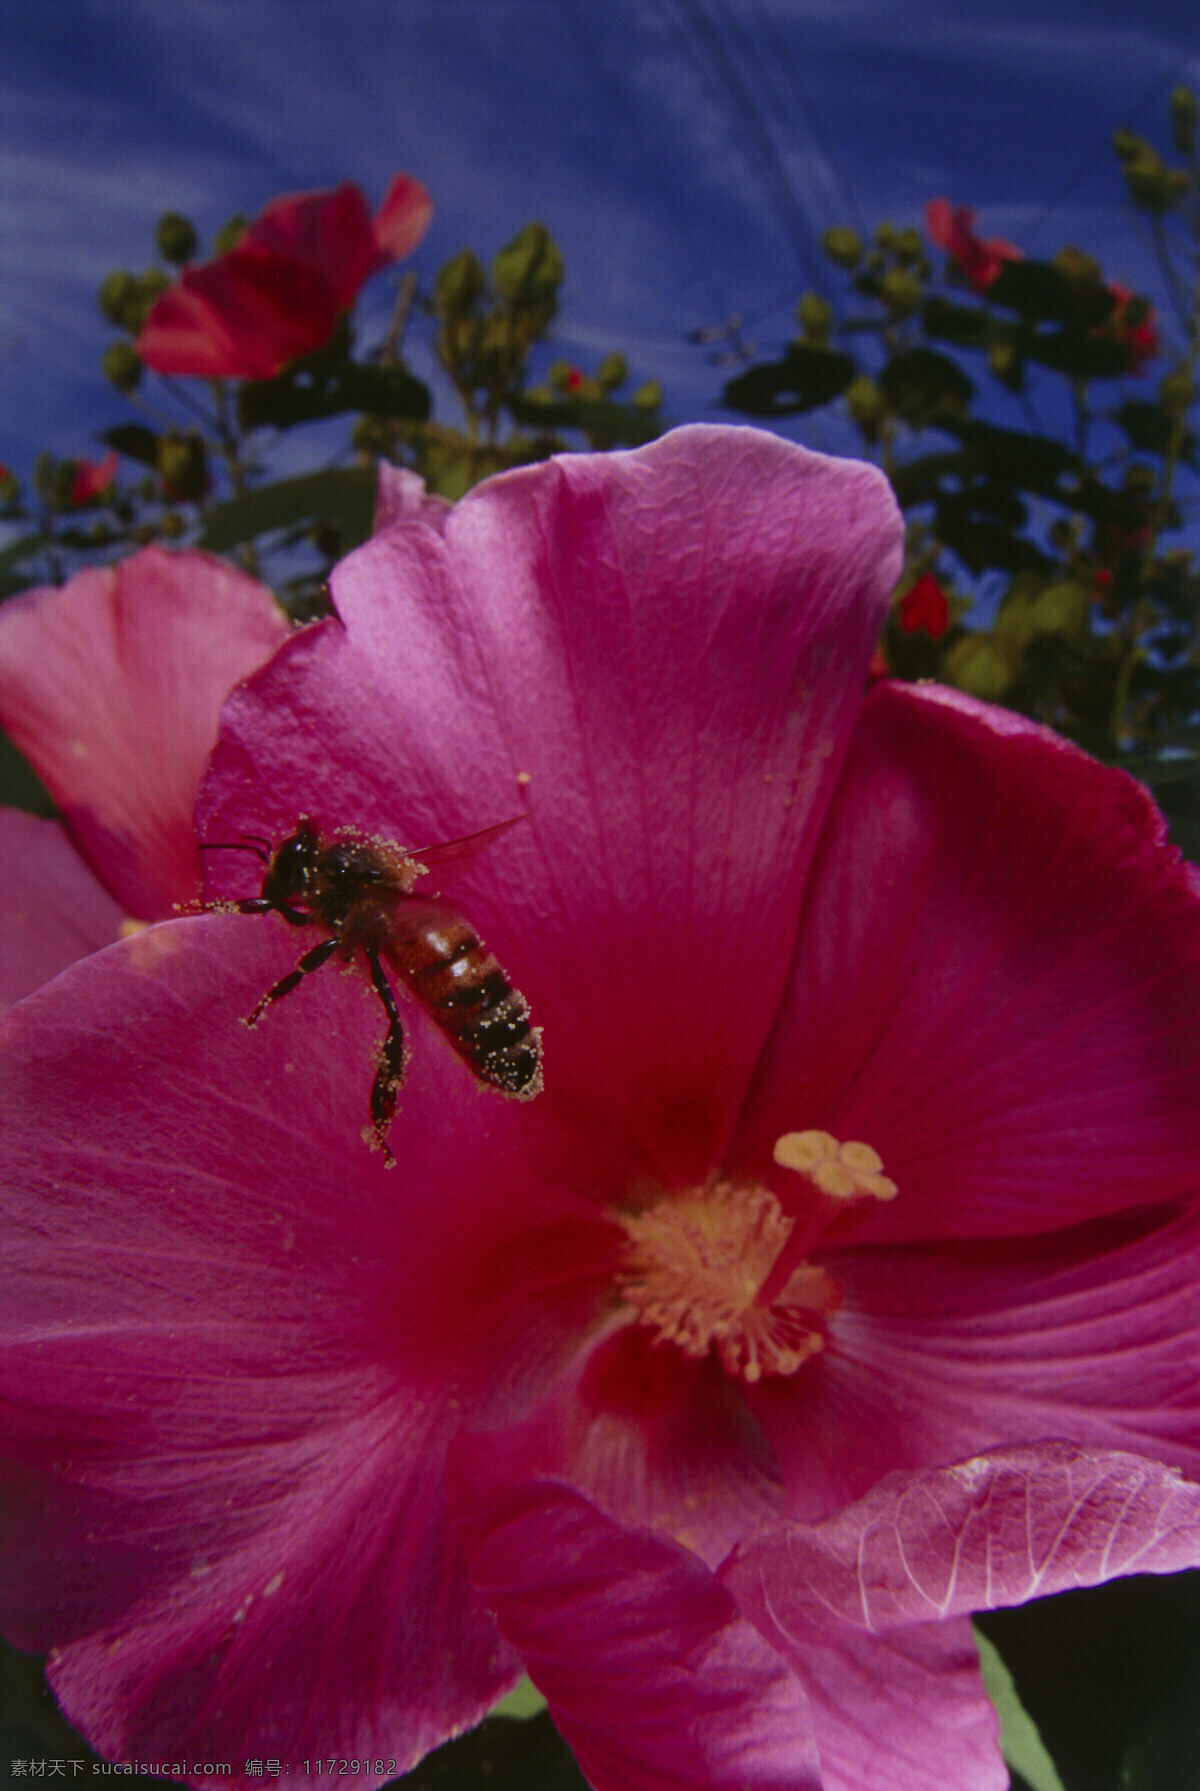 正在 采 蜜 蜜蜂 小蜜蜂 采蜜 美丽鲜花 花丛 花朵 动物世界 昆虫世界 花草树木 生态环境 生物世界 野外 自然界 自然生物 自然生态 高清图片 自然 植物 户外